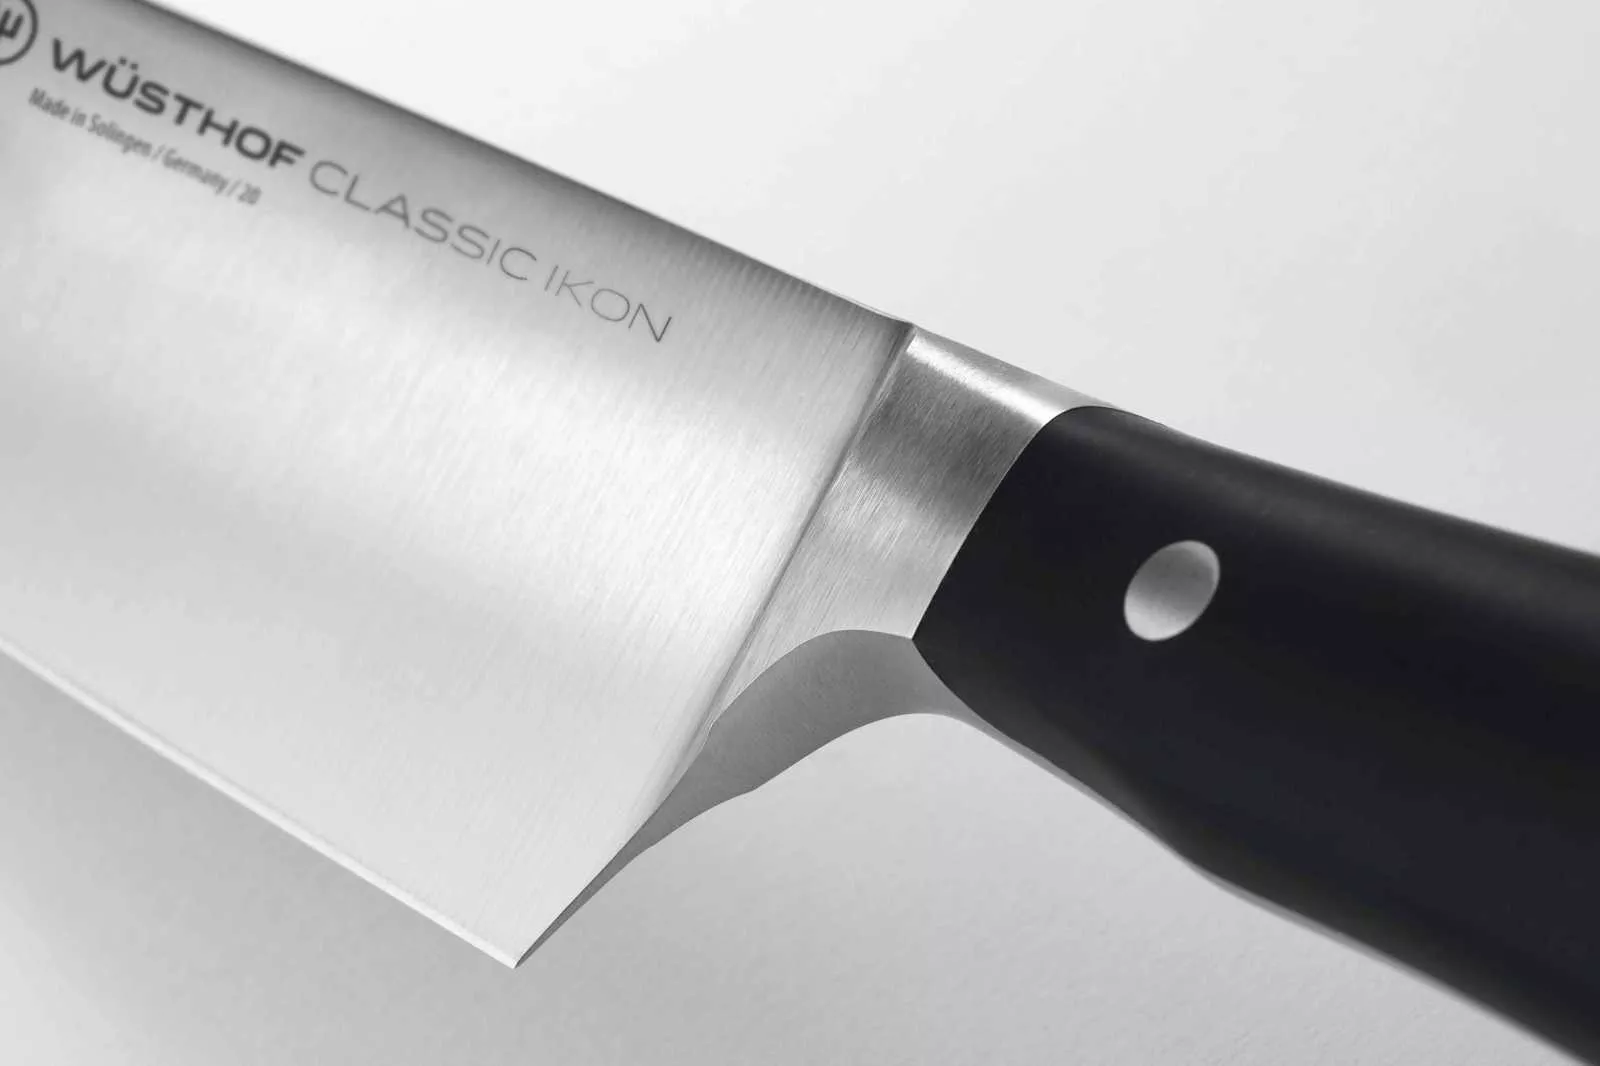 Нож шеф-повара Wuesthof Classic Ikon в картонной упаковке, длина 20 см (1040330120) - Фото nav 2